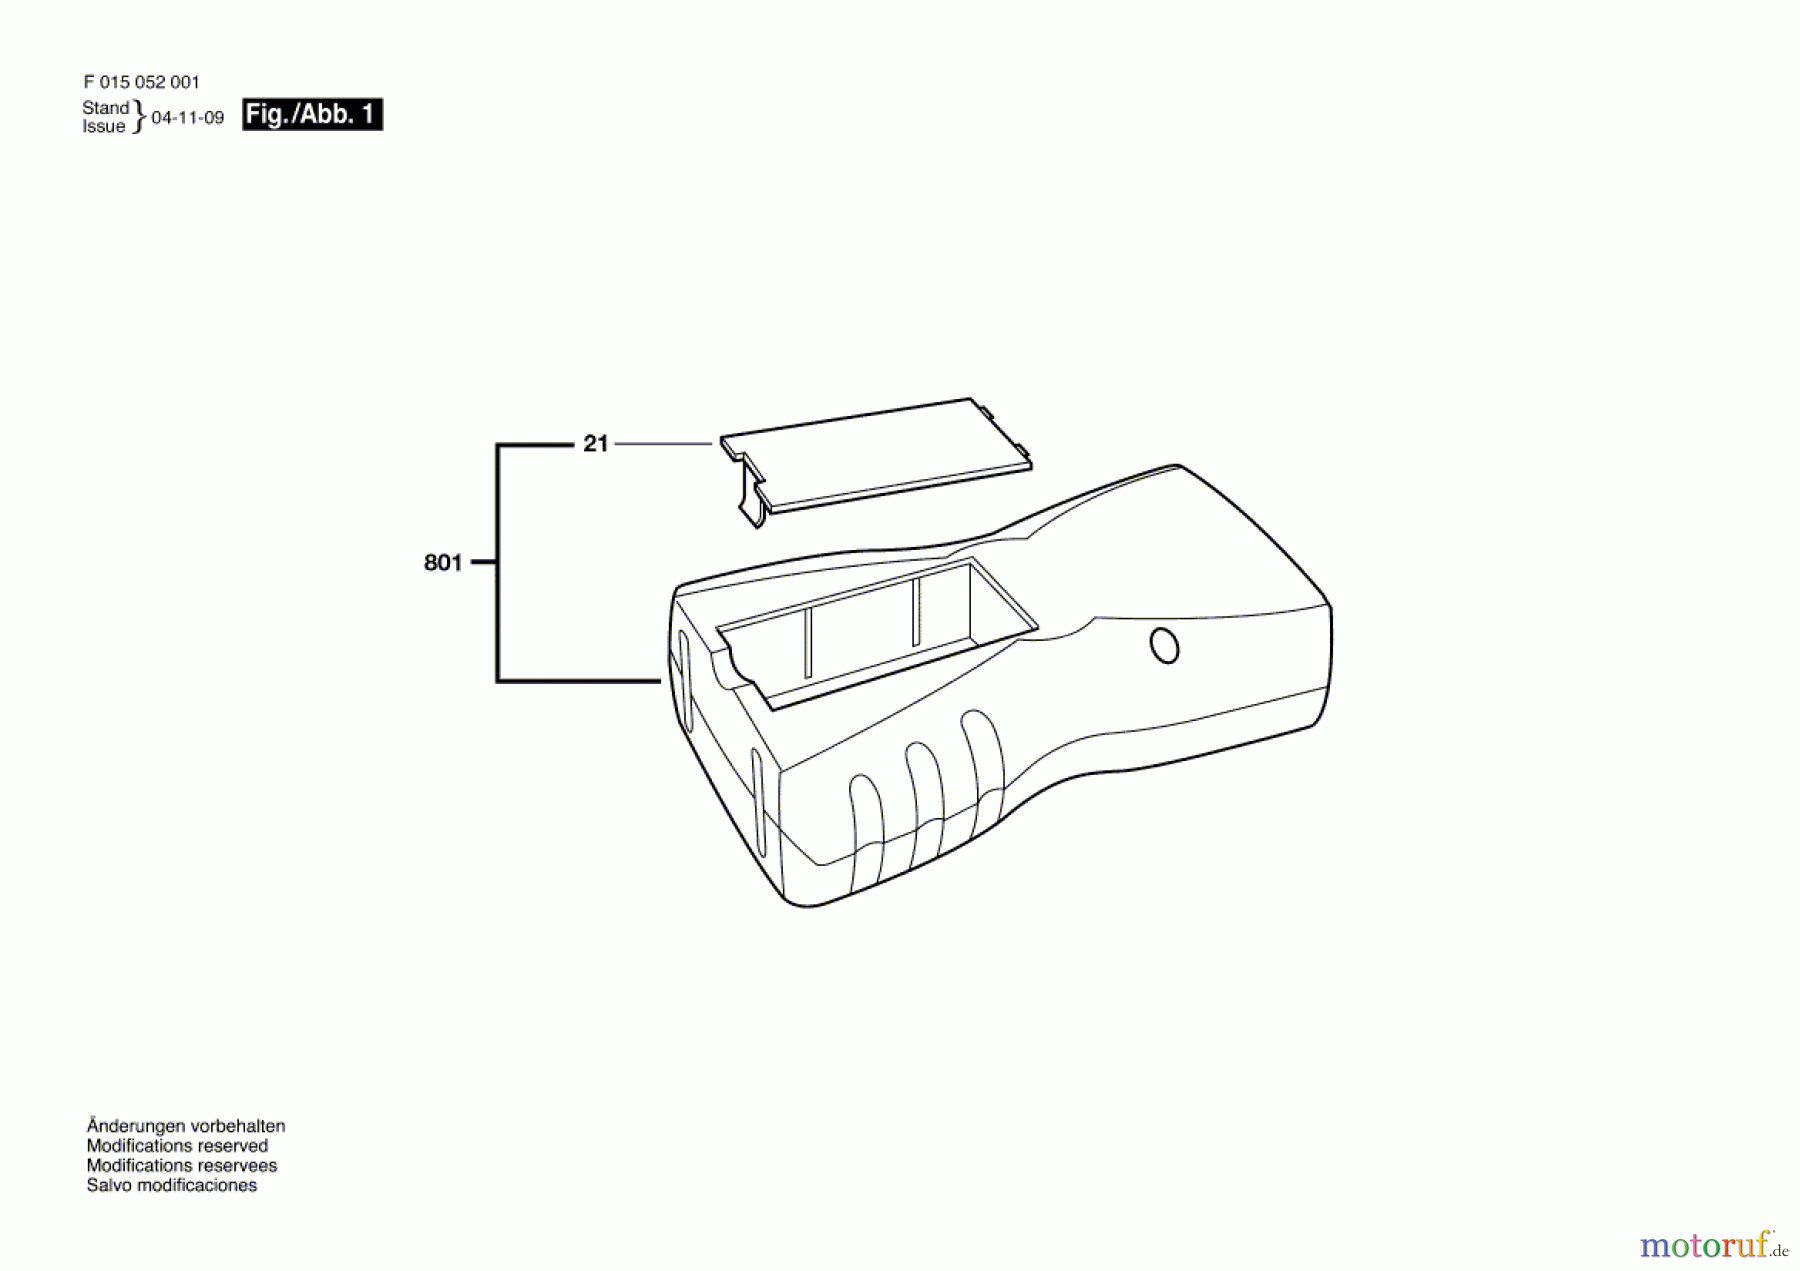  Bosch Werkzeug Laser 0520 Seite 1